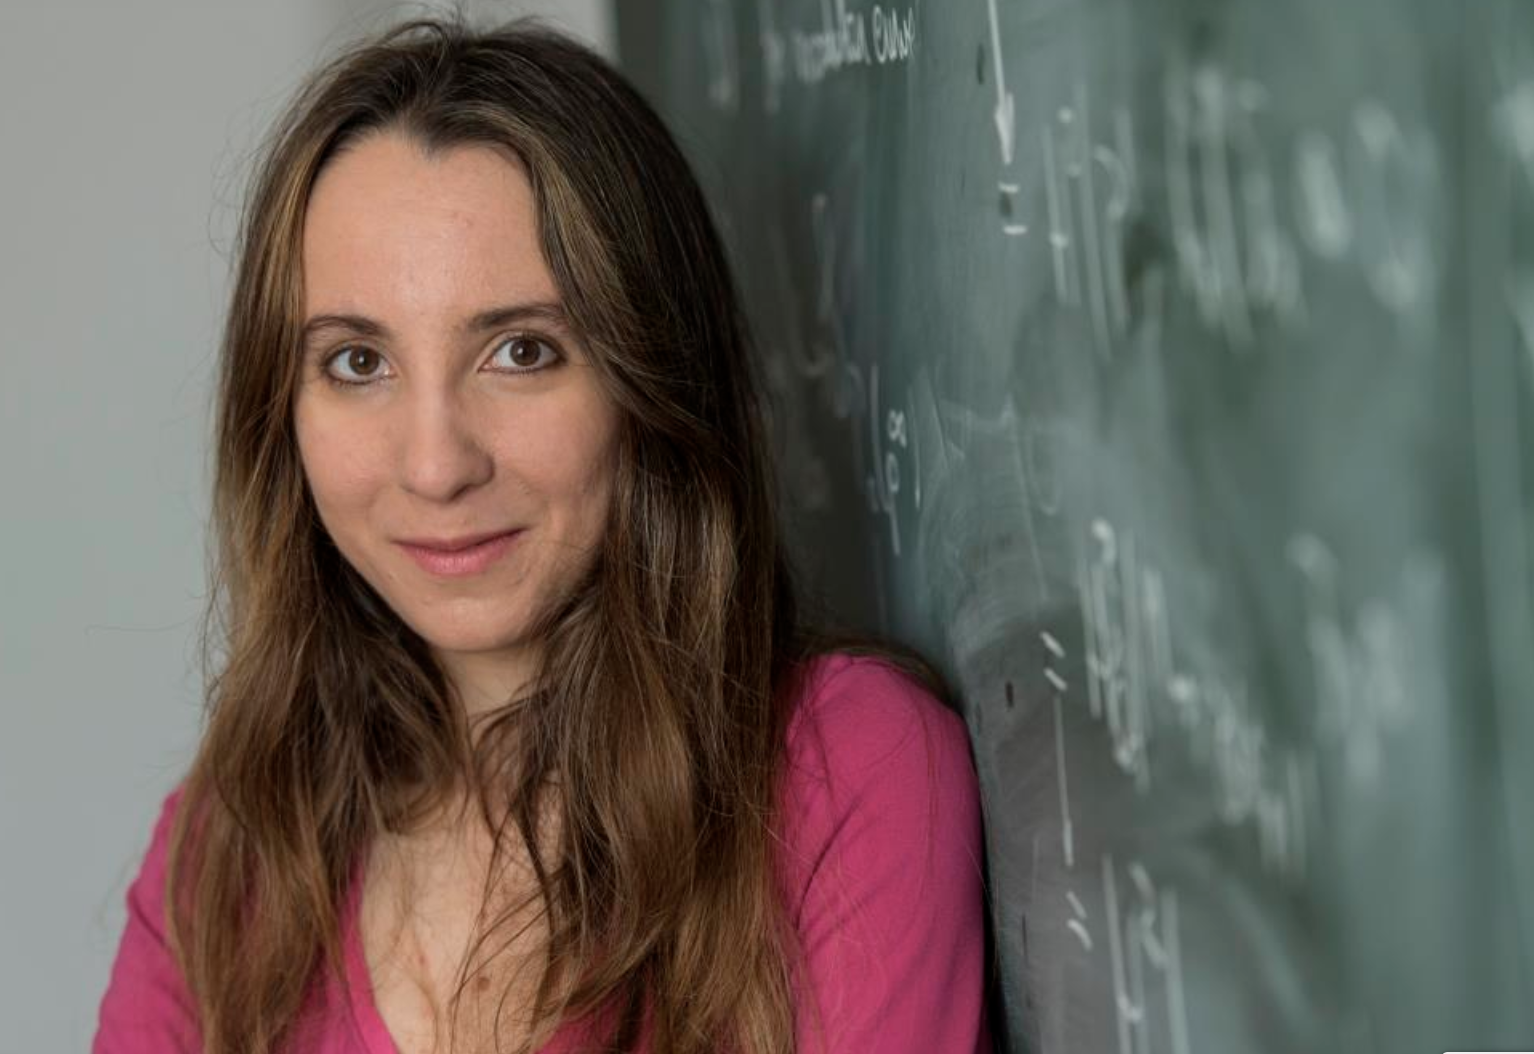 Românca Ana Caraiani a câștigat două medalii de aur la Olimpiada Internațională de Matematică. Acum predă la un colegiu prestigios din Marea Britanie